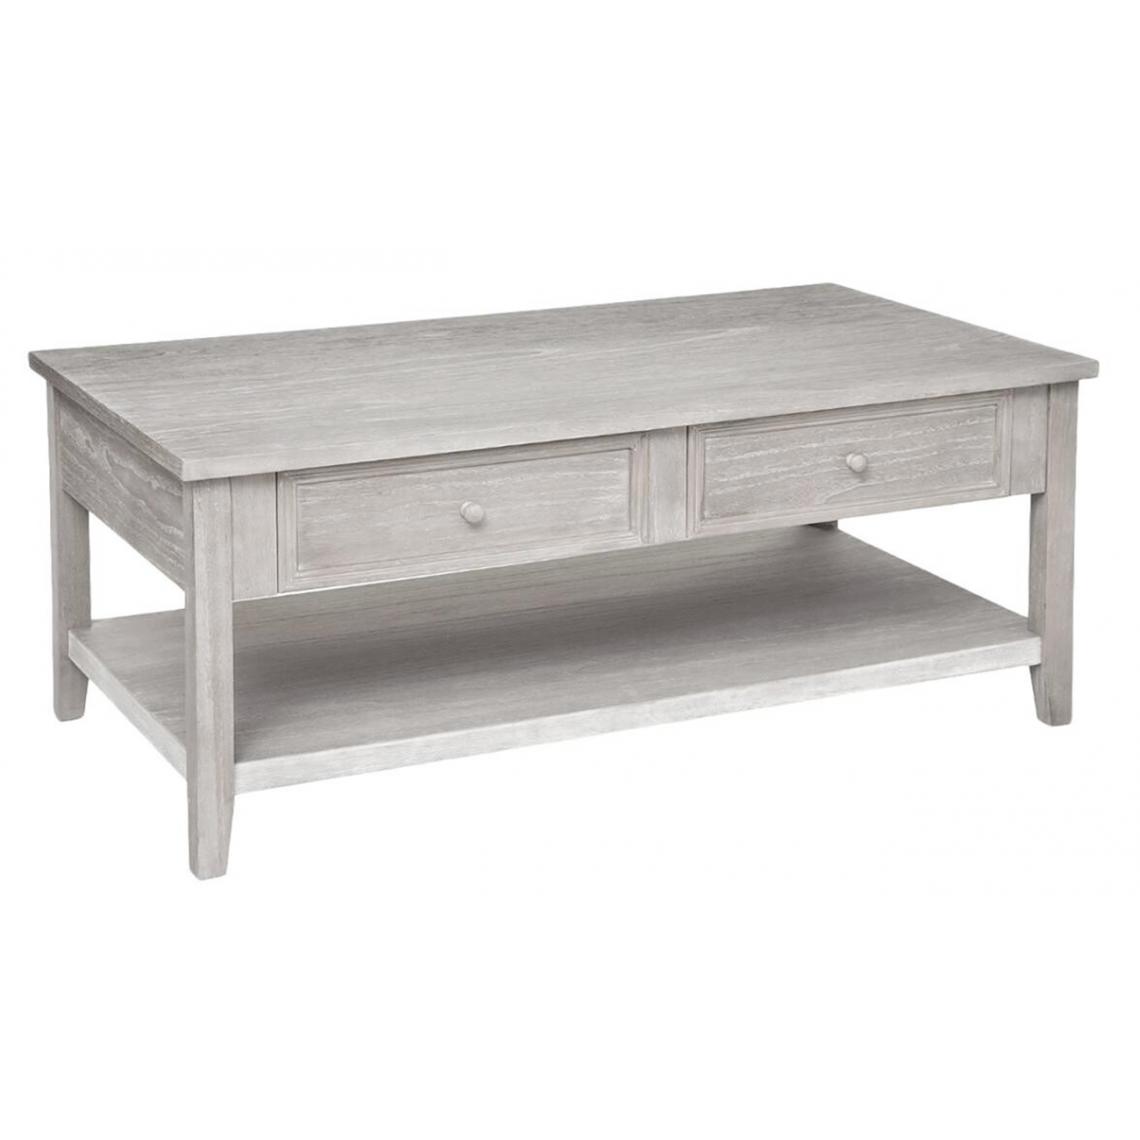 Pegane - Table basse de 2 tiroirs coloris beige - Longueur 110 x Profondeur 60 x Hauteur 45 cm - Tables basses